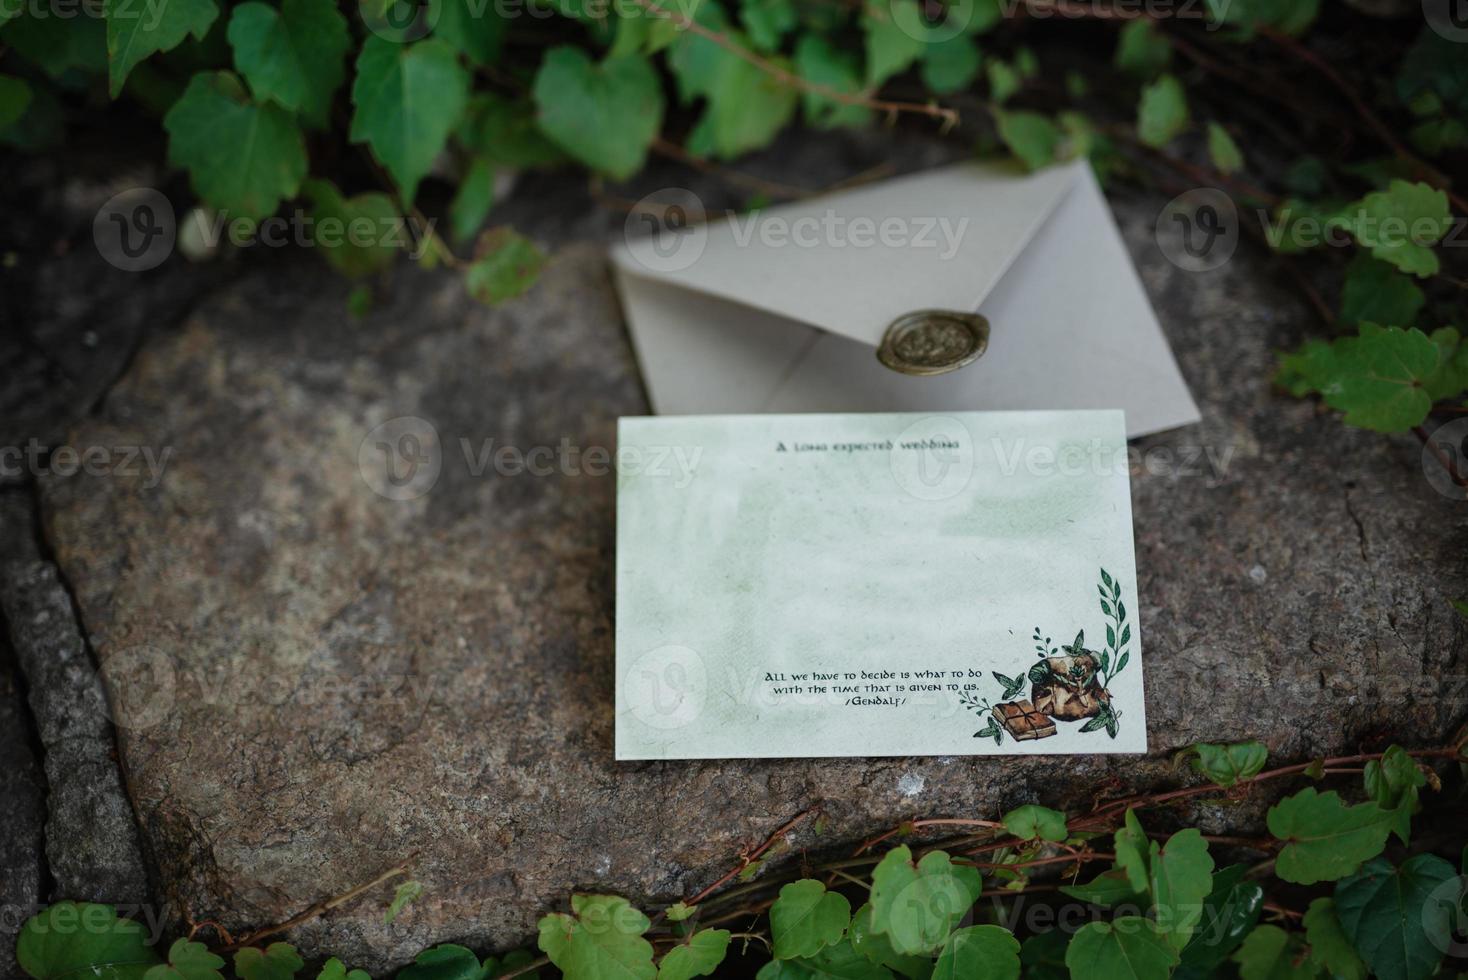 convite de casamento em um envelope cinza sobre uma mesa foto